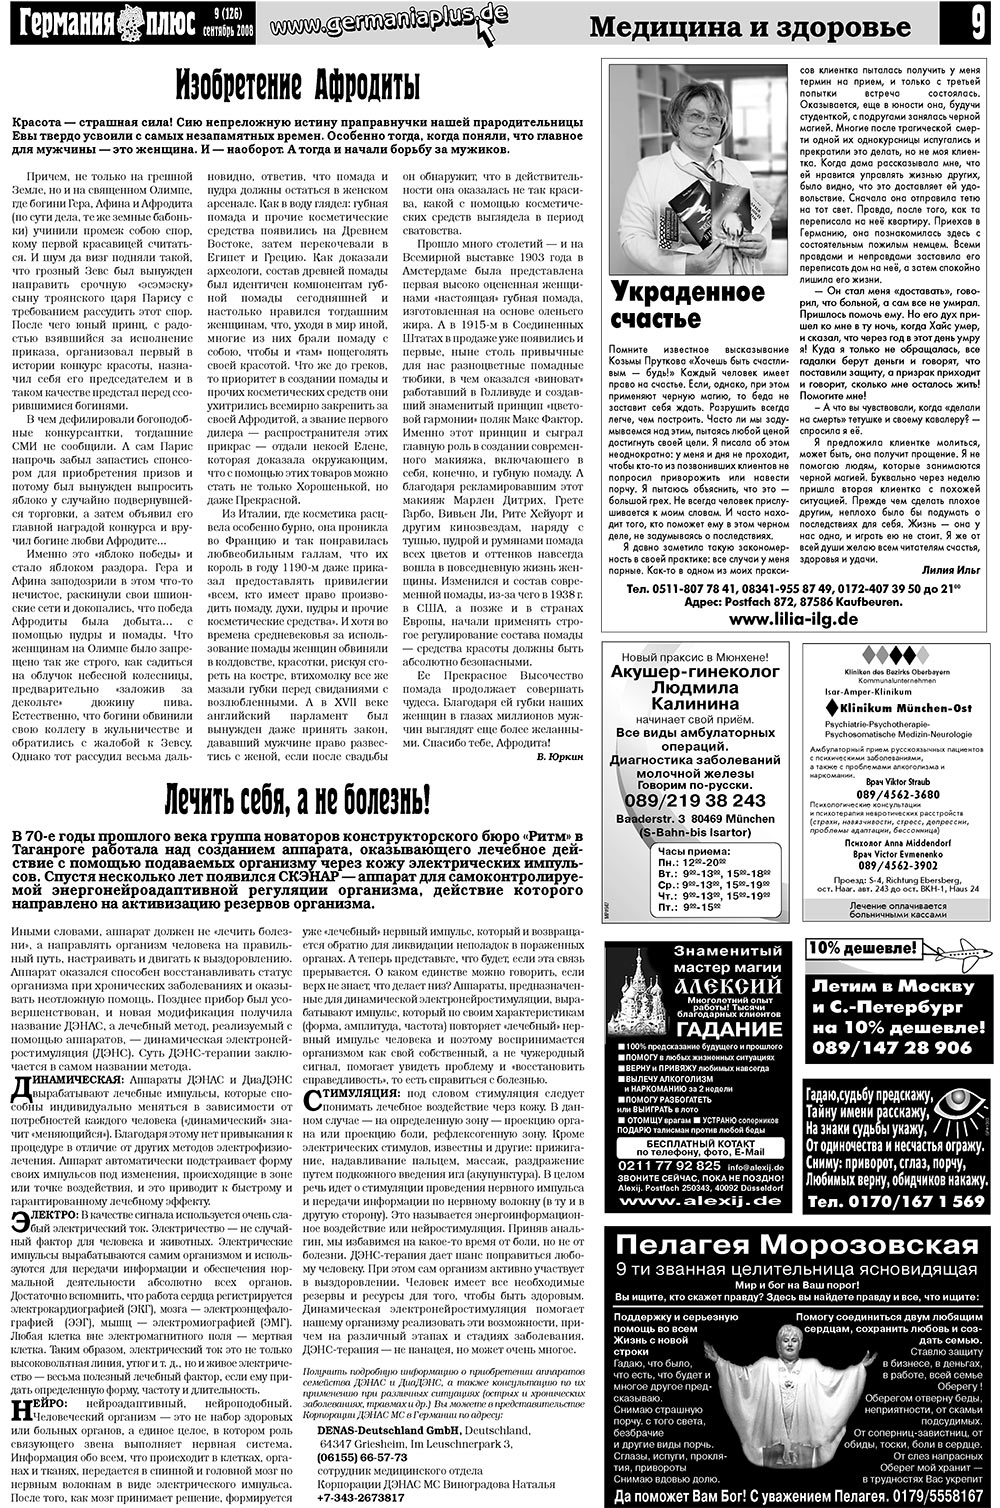 Германия плюс, газета. 2008 №9 стр.13